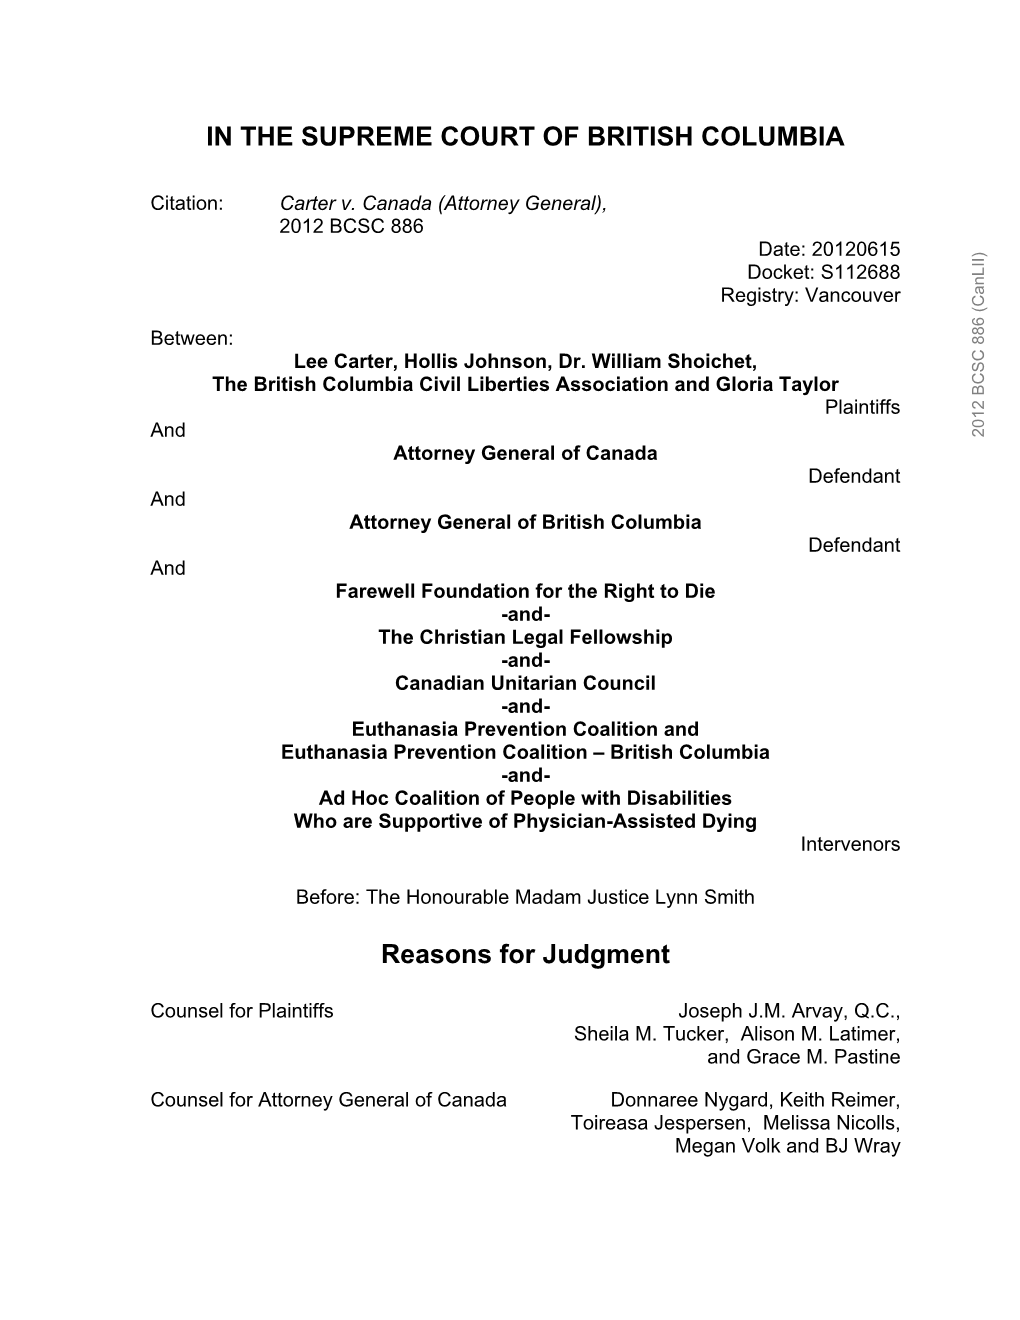 Carter V. Canada (Attorney General), 2012 BCSC 886 Date: 20120615 Docket: S112688 Registry: Vancouver